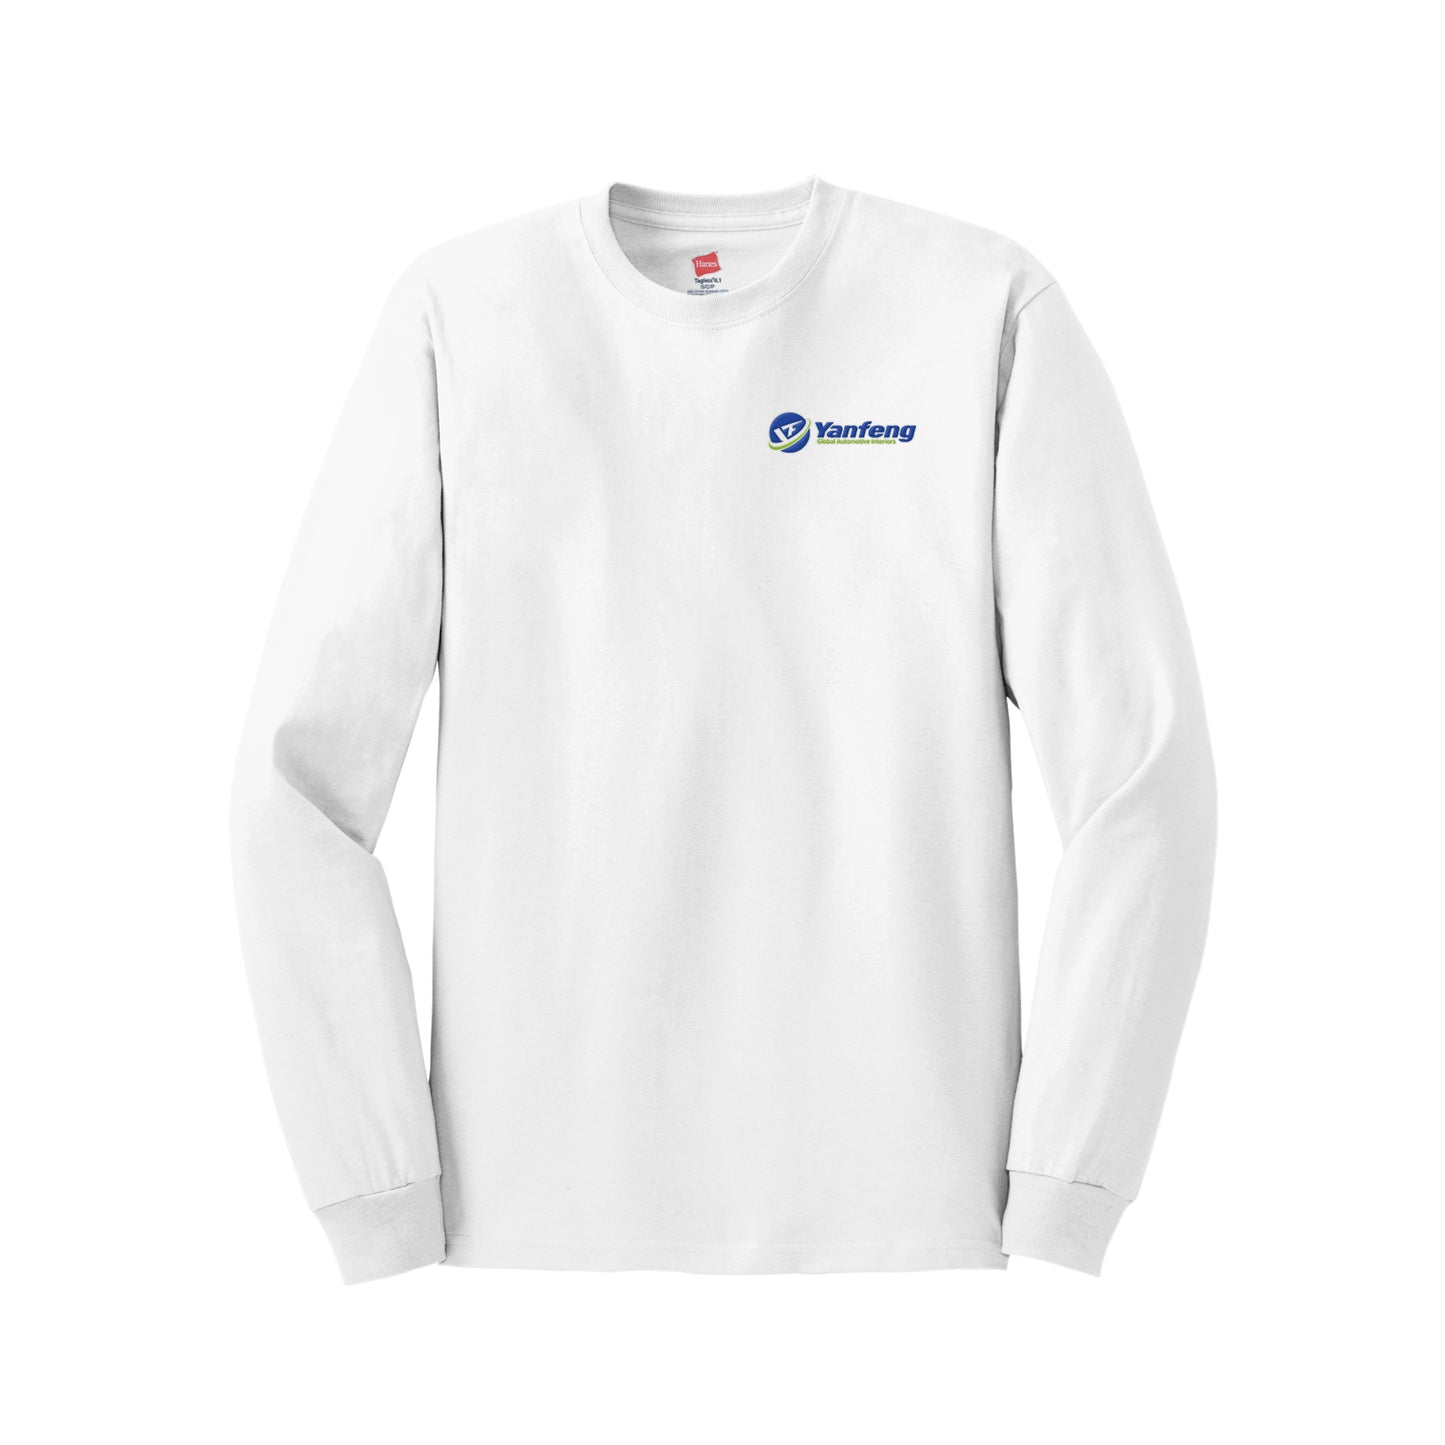 Yanfeng | Tagless® 100% Cotton Long Sleeve T-Shirt